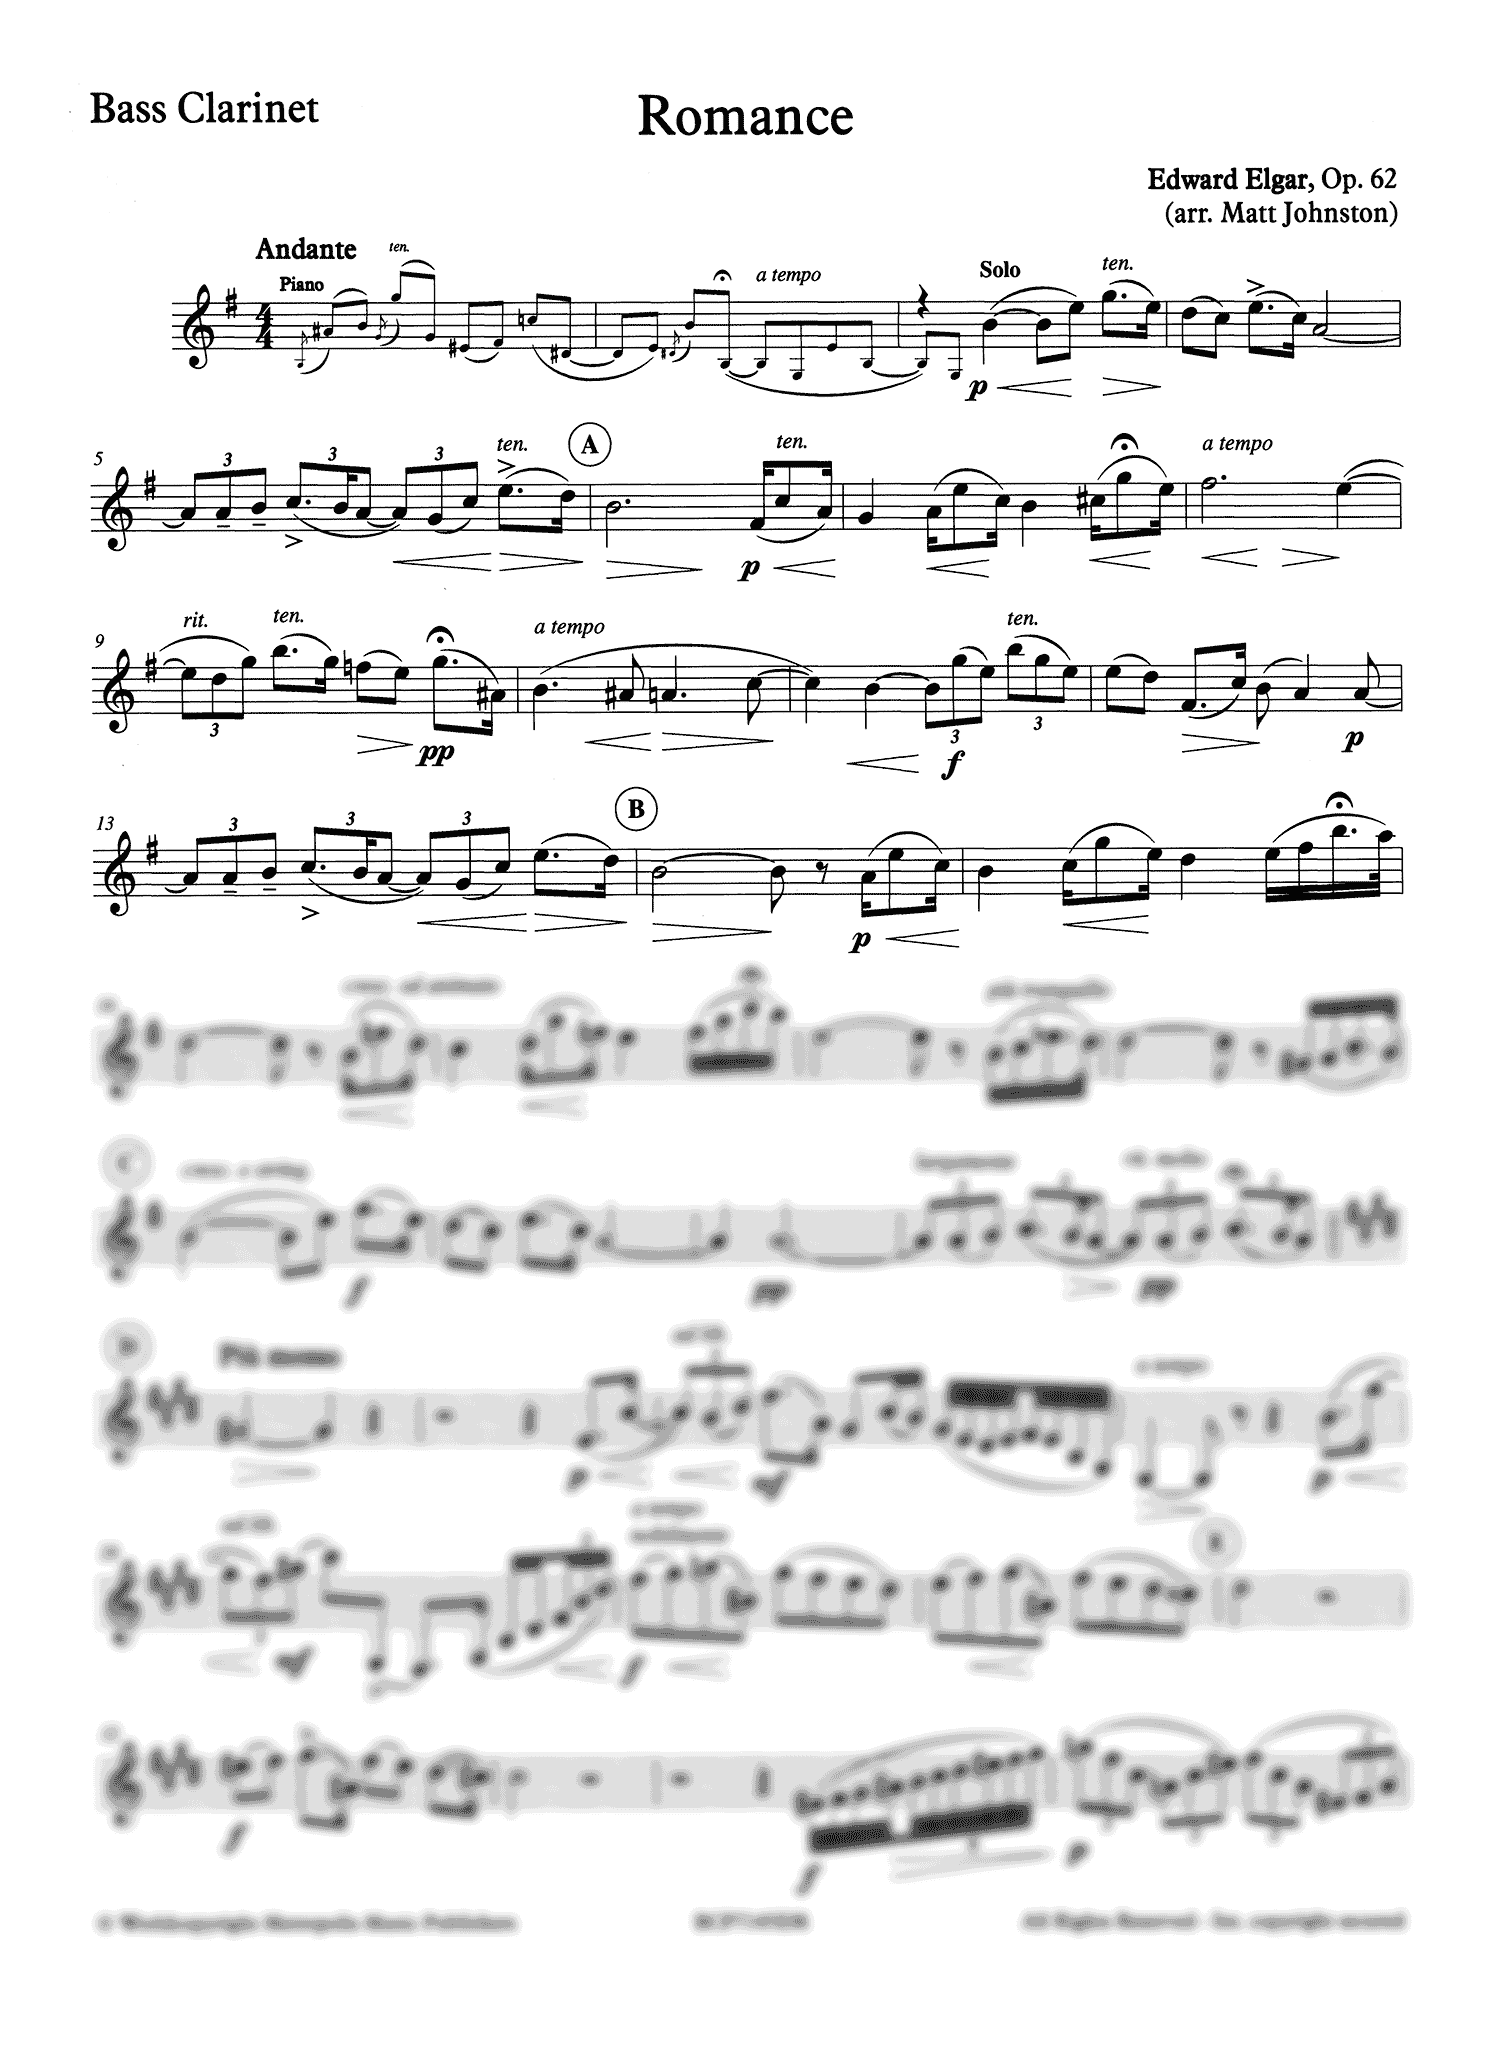 Elgar, Edward Romance, Op. 62 bass clarinet arrangement solo part